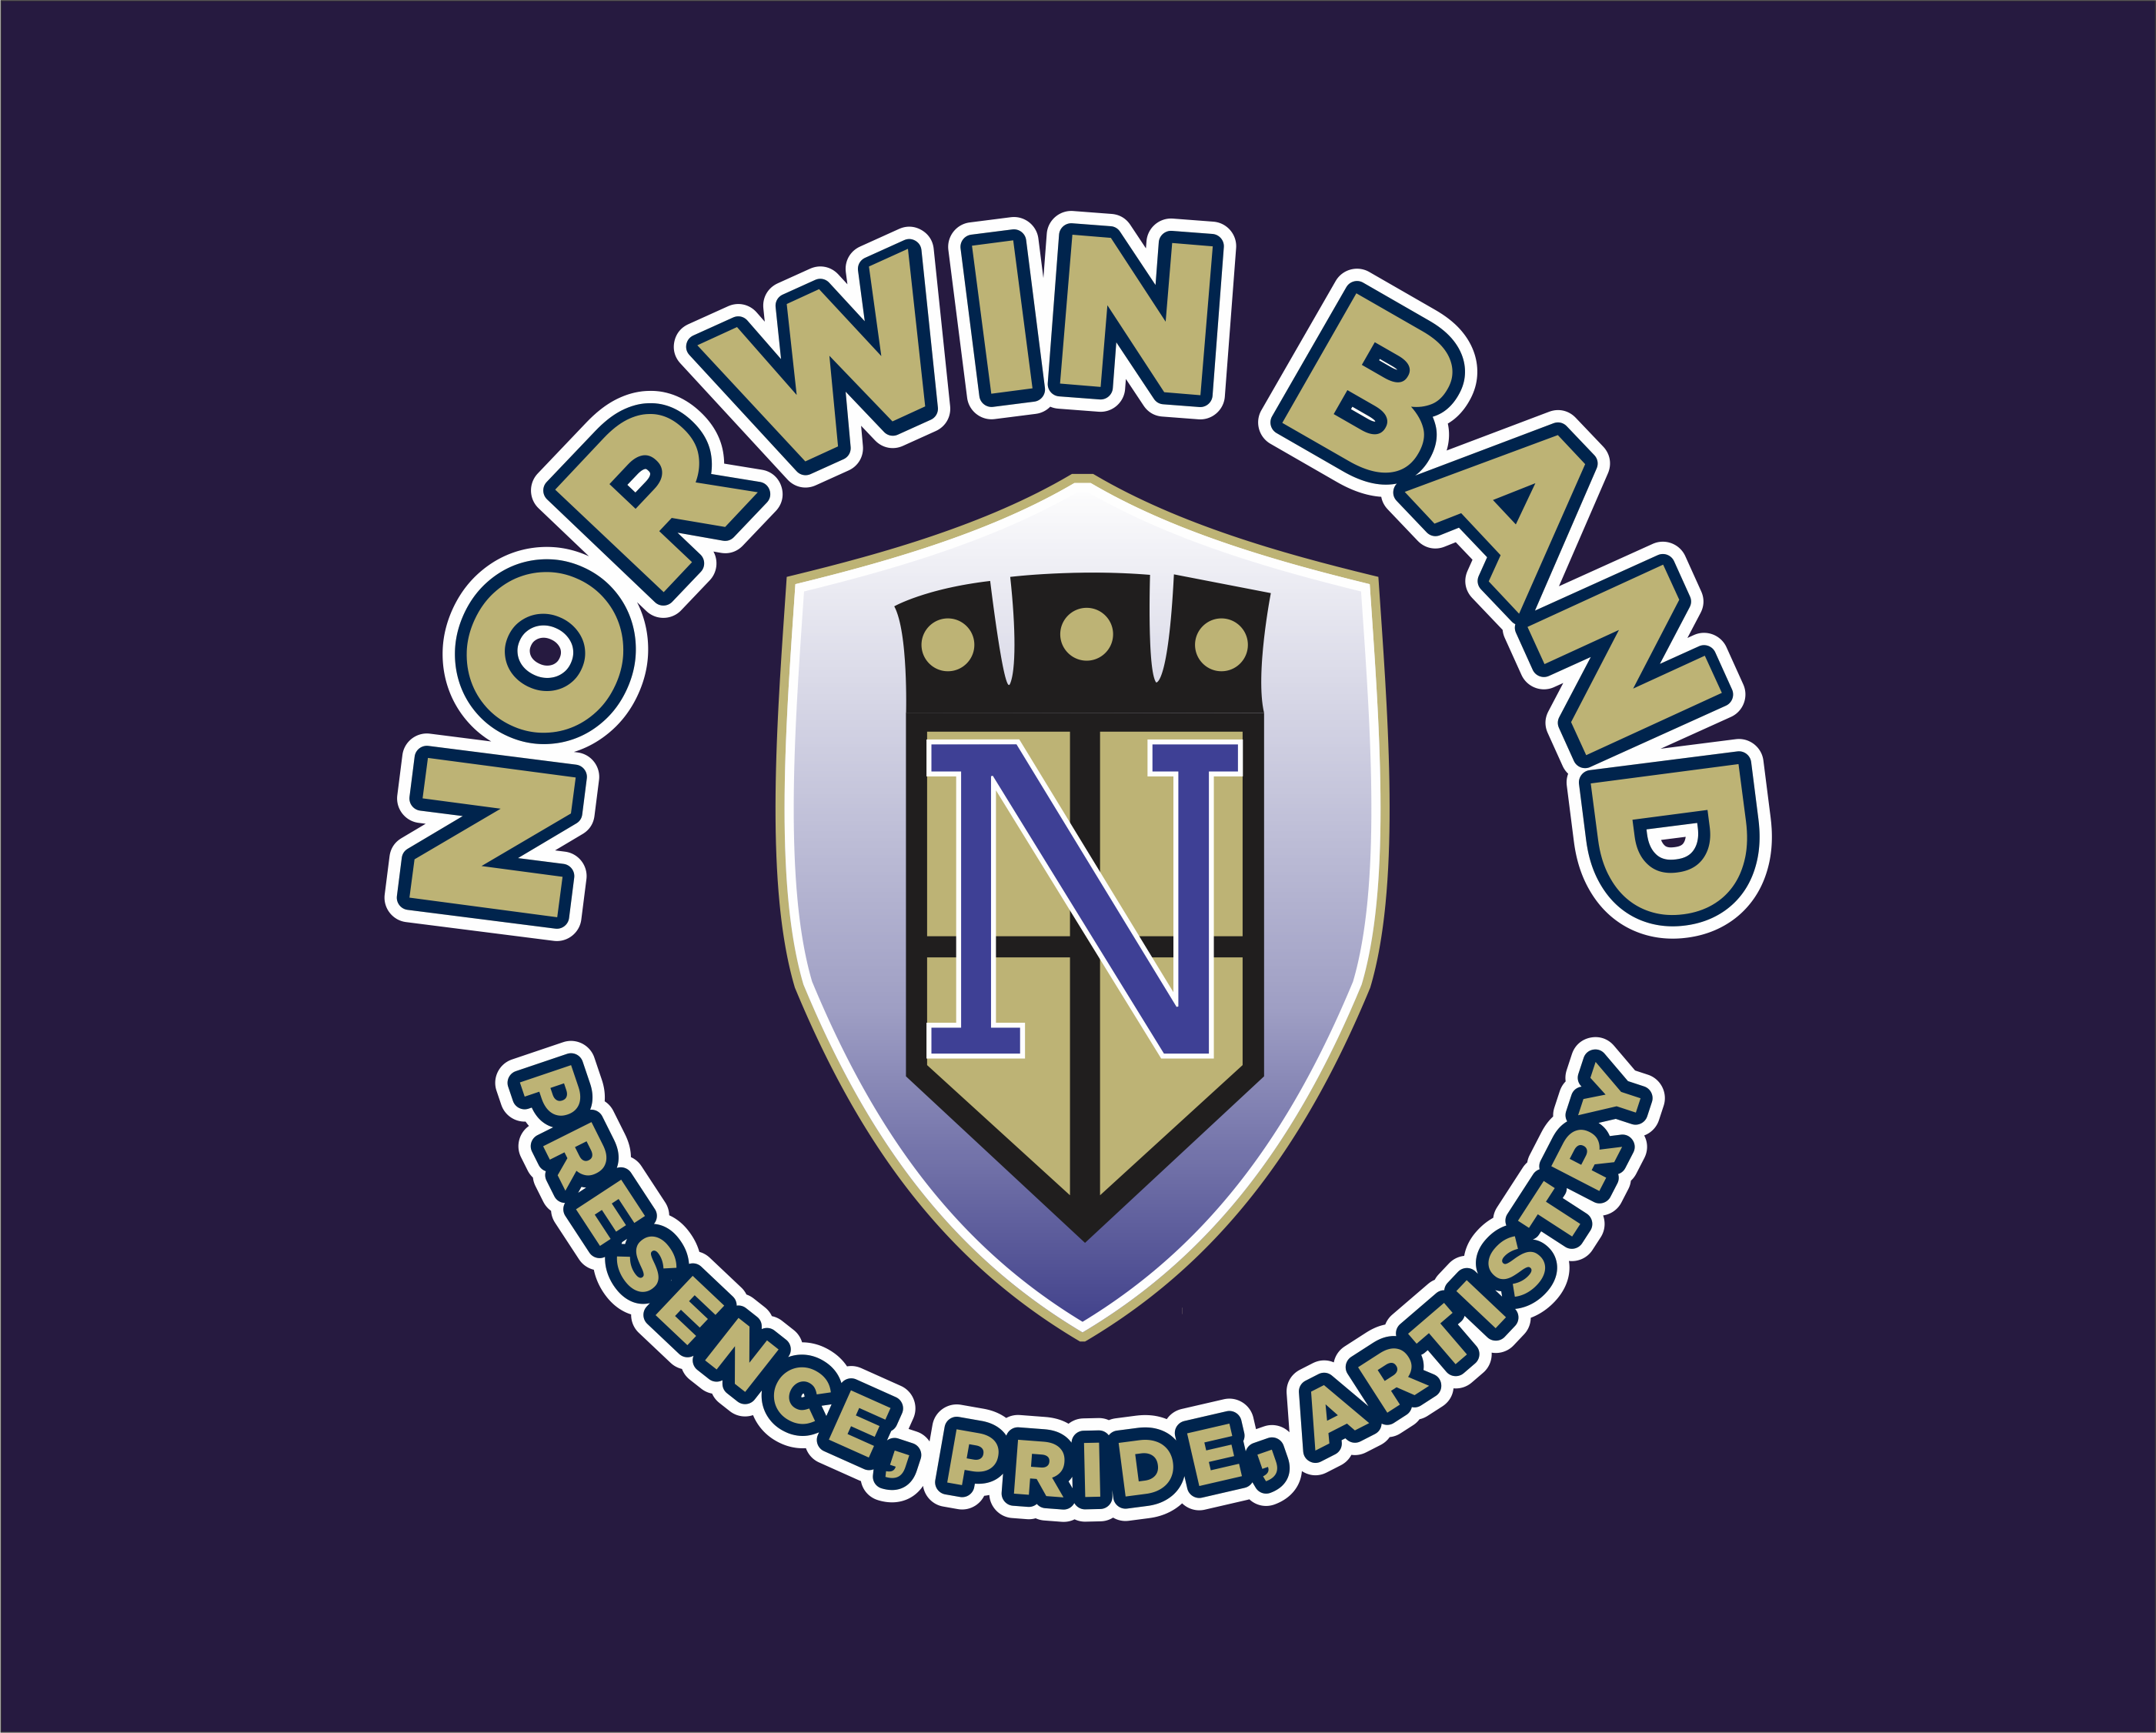 norwin band mattress sale